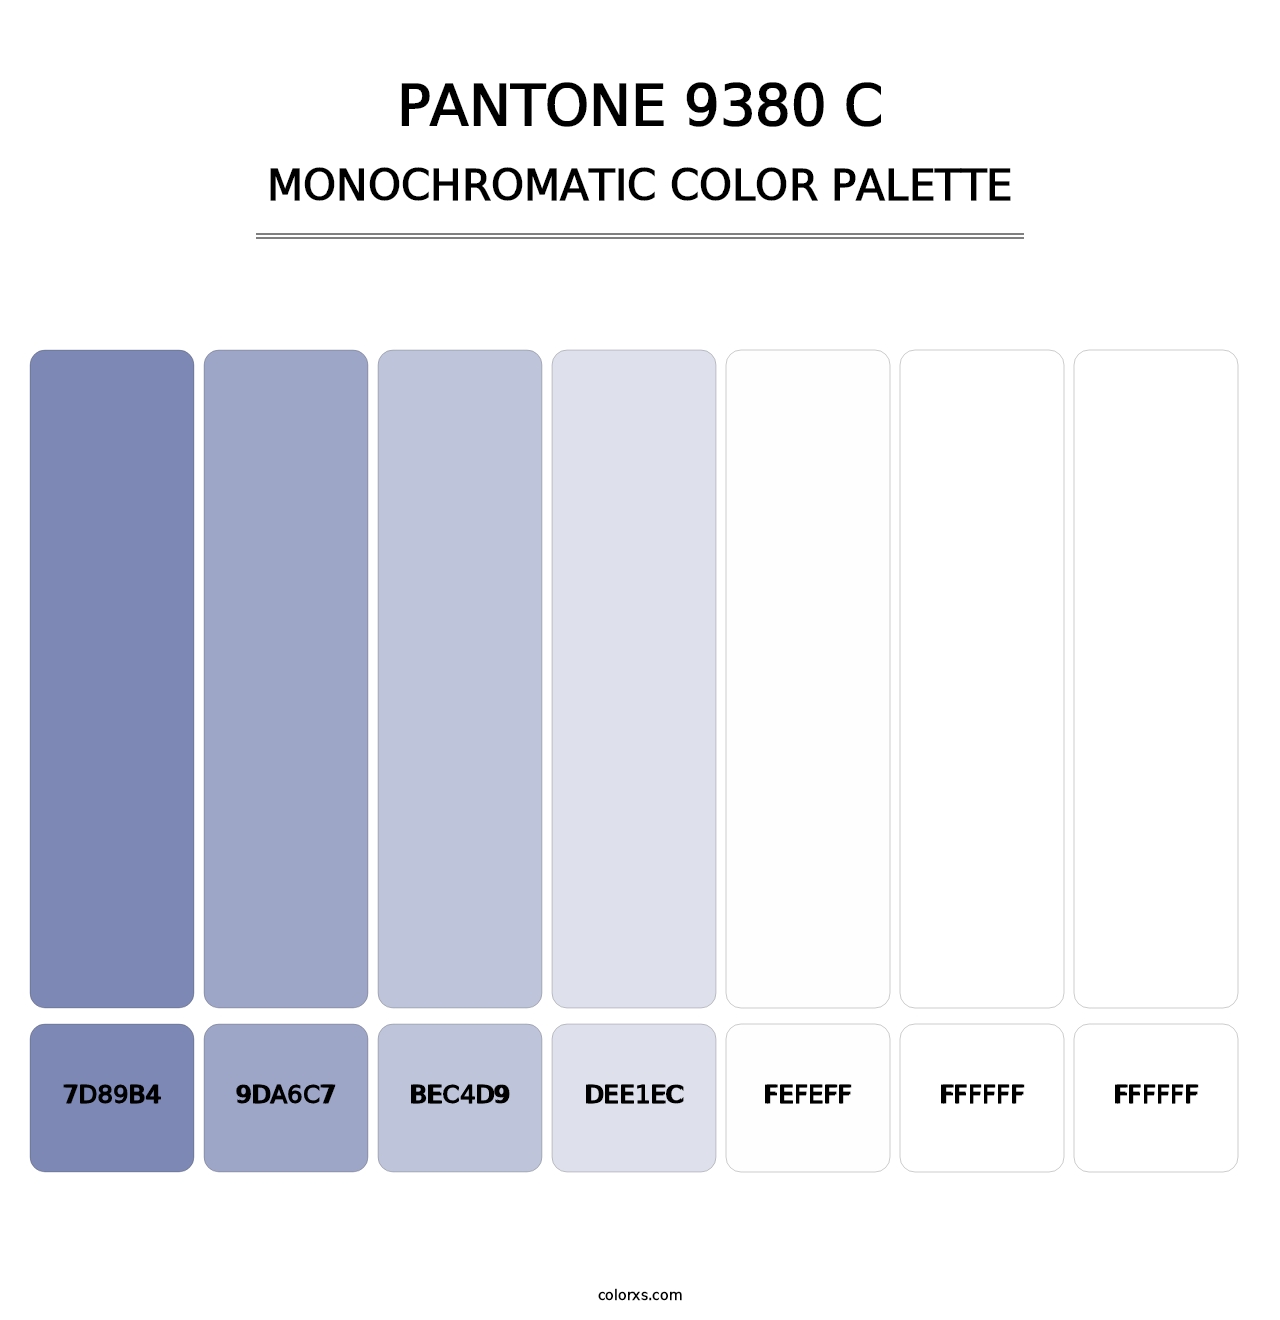 PANTONE 9380 C - Monochromatic Color Palette